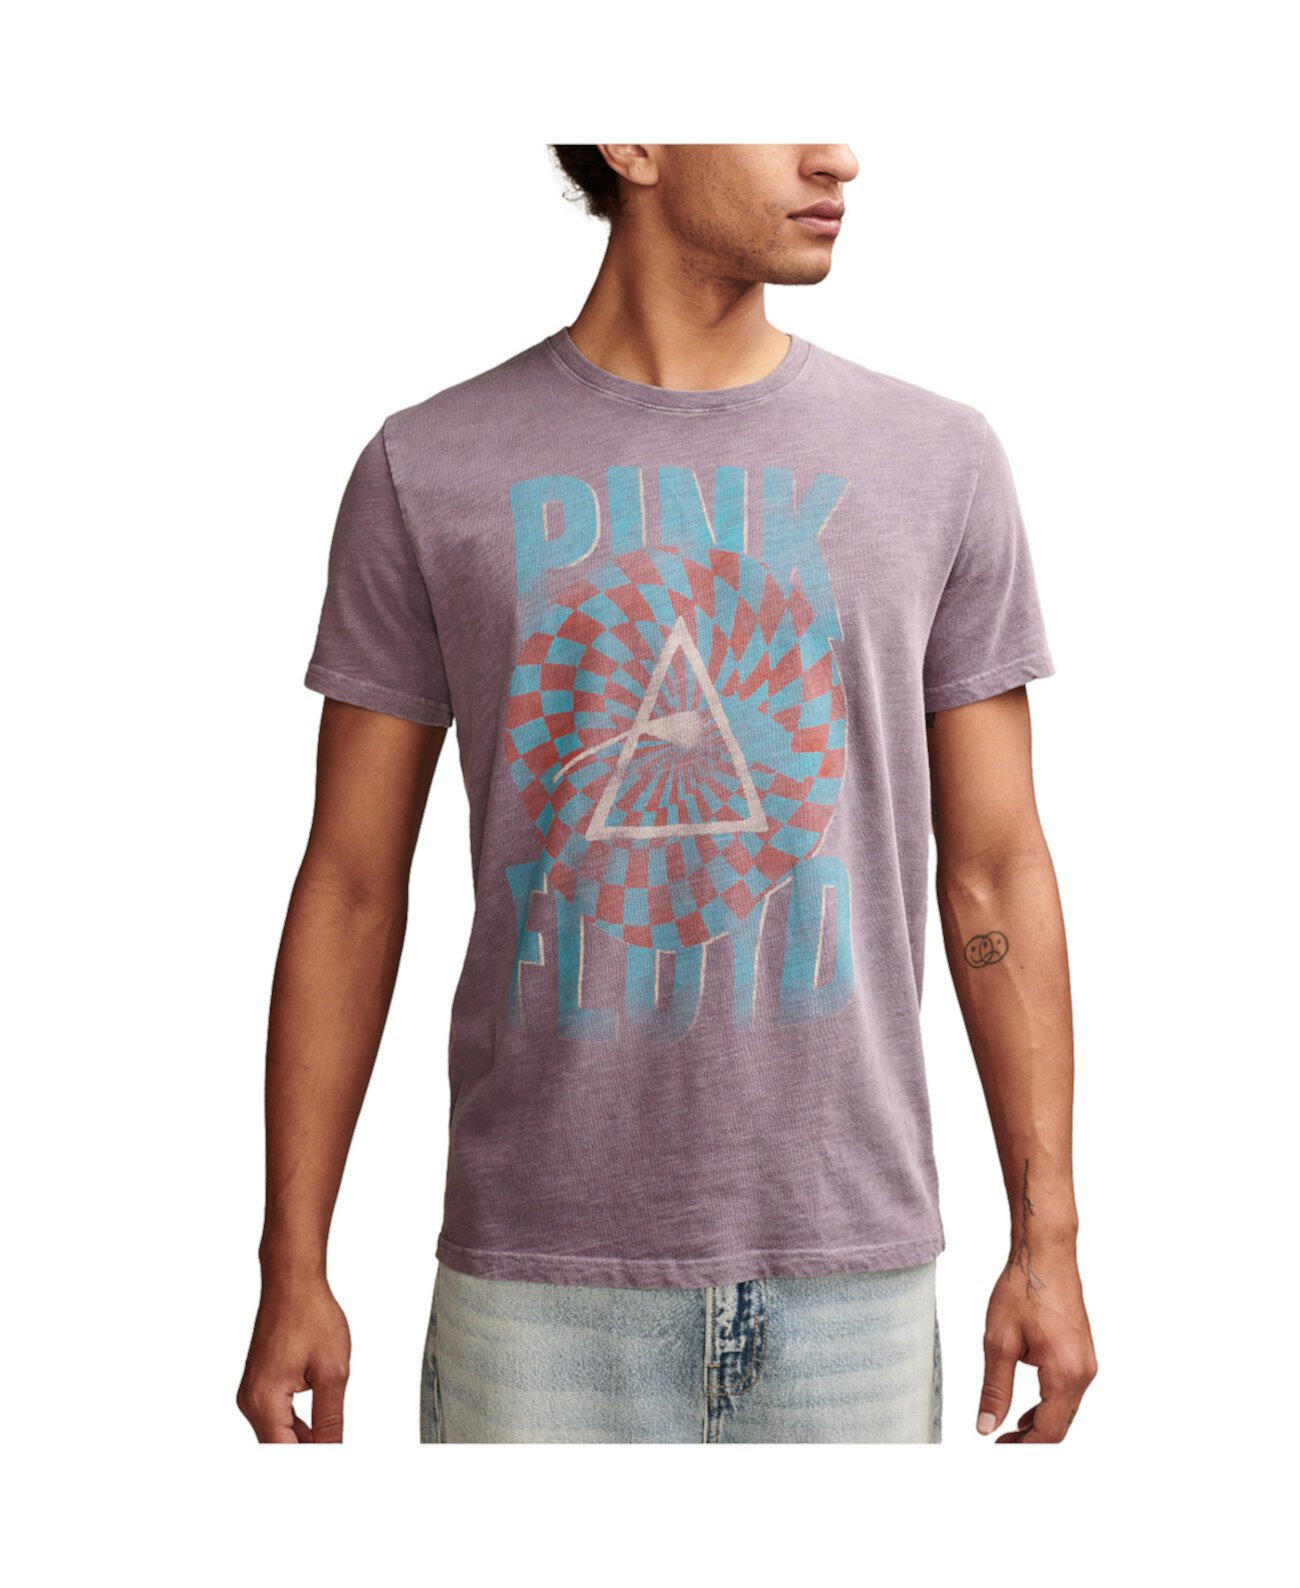 Men's Short Sleeve Pink Floyd Prism T-shirt Lucky Brand